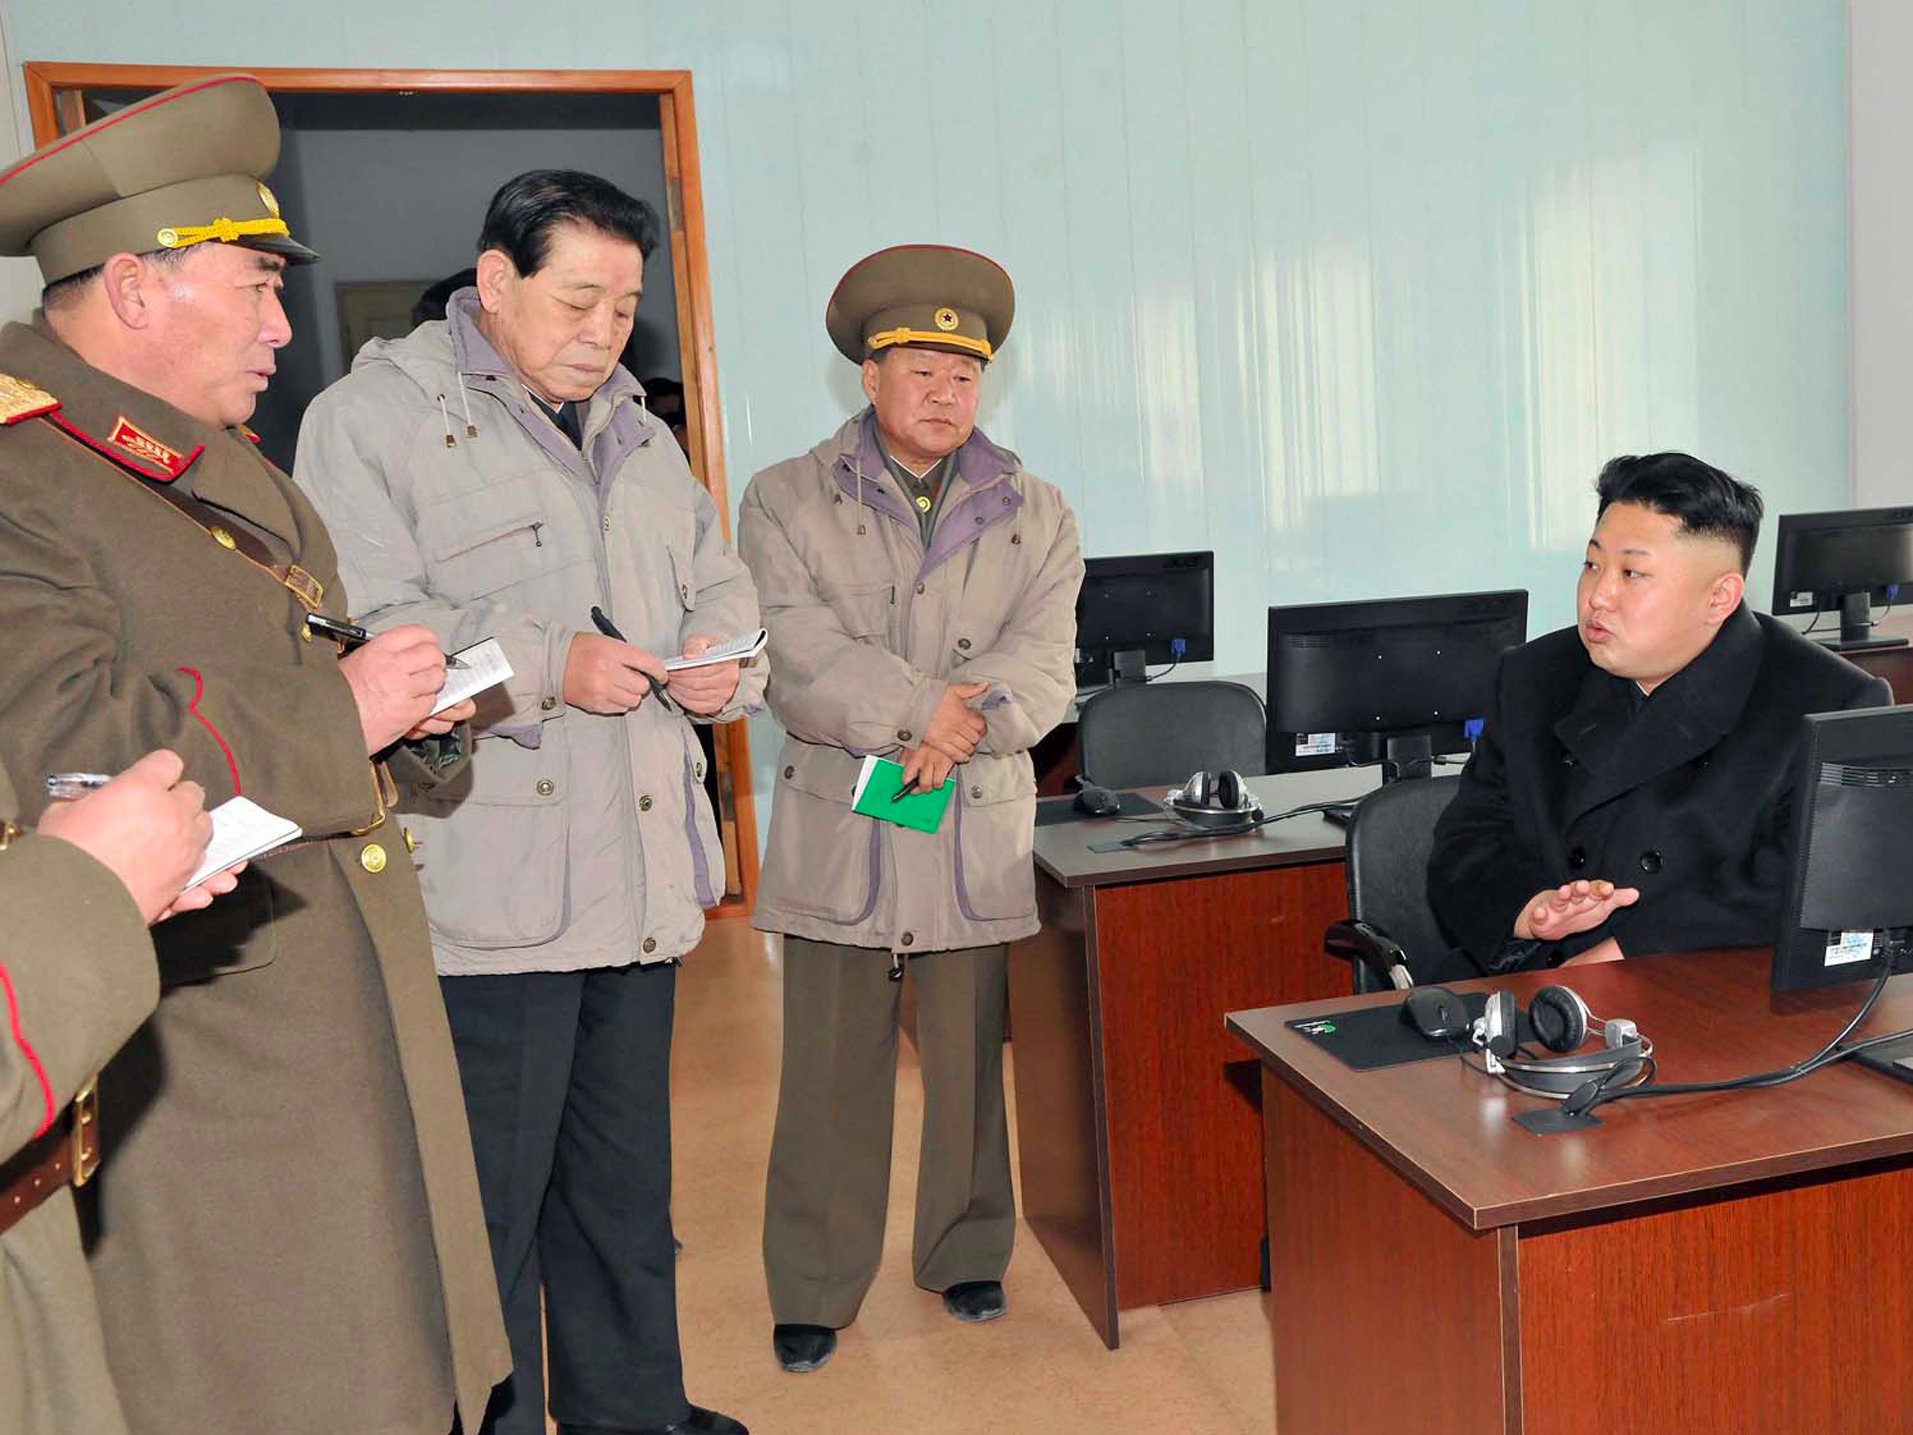 بعد سنوات من السرية.. سبب تدوين حاشية زعيم كوريا الشمالية للملاحظات